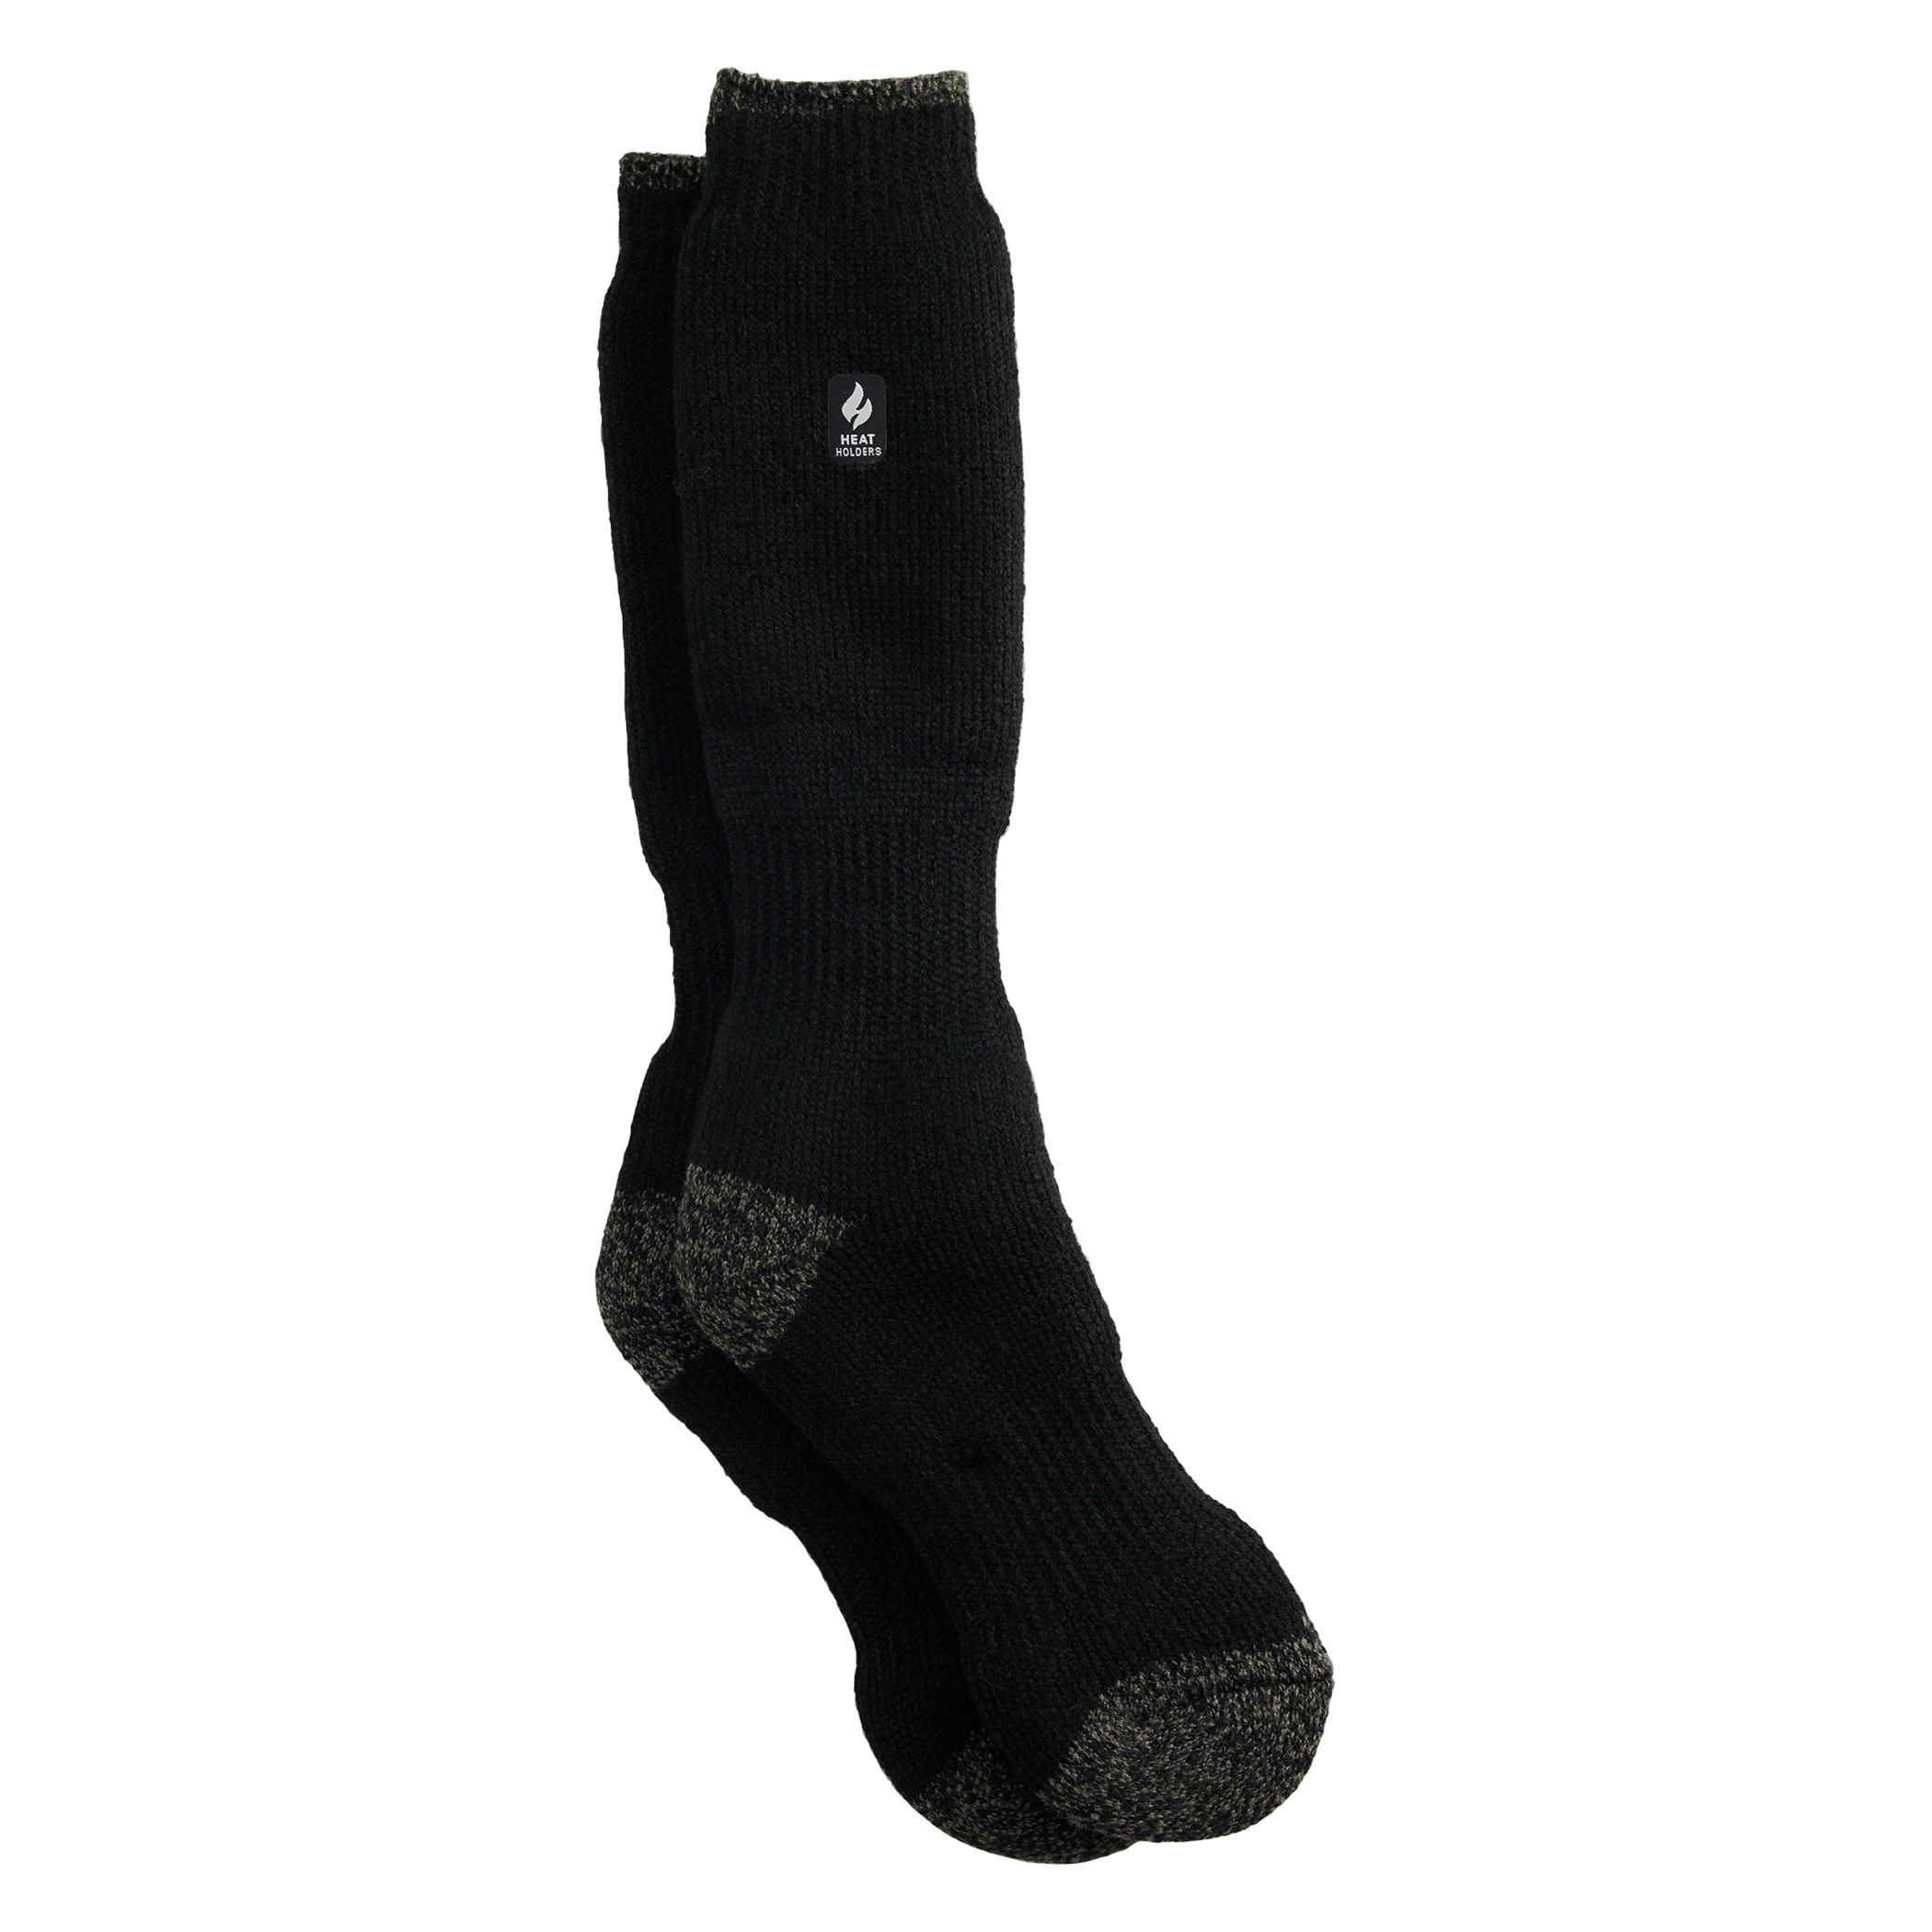 Женские однотонные длинные носки Ashley черного цвета с держателями для тепла Heat Holders coghlans egg holders